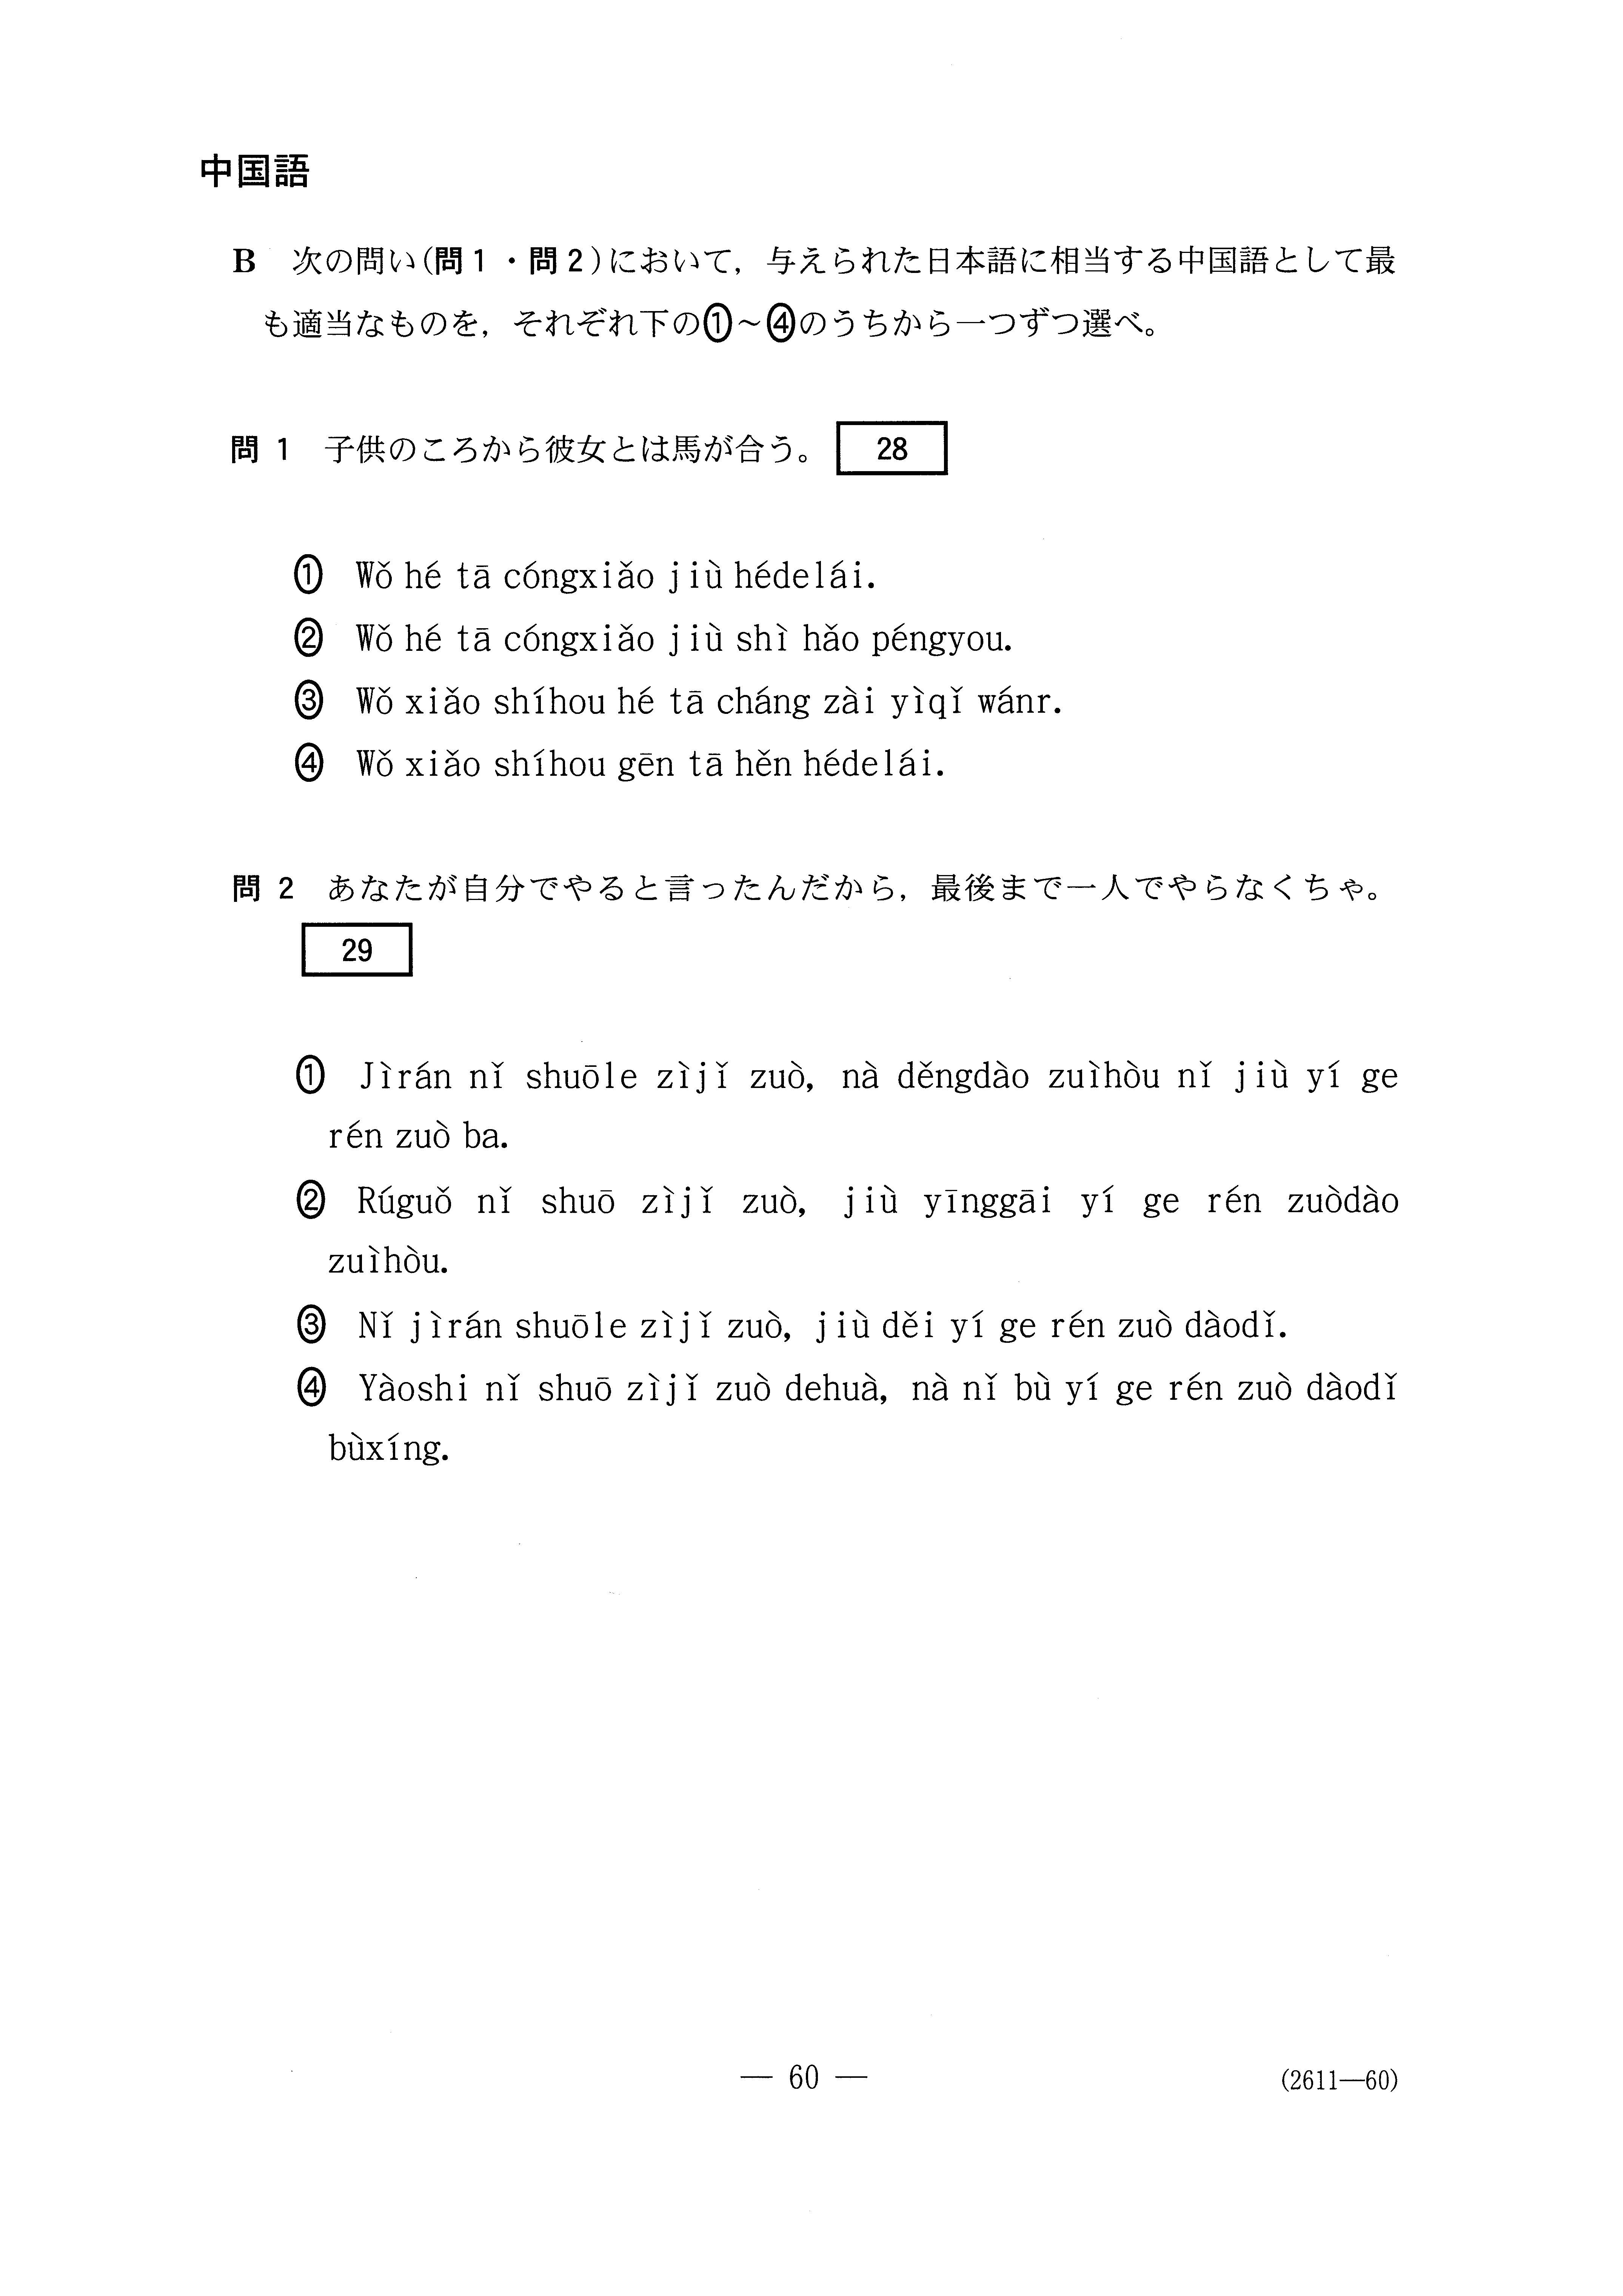 H27外国語 中国語 大学入試センター試験過去問